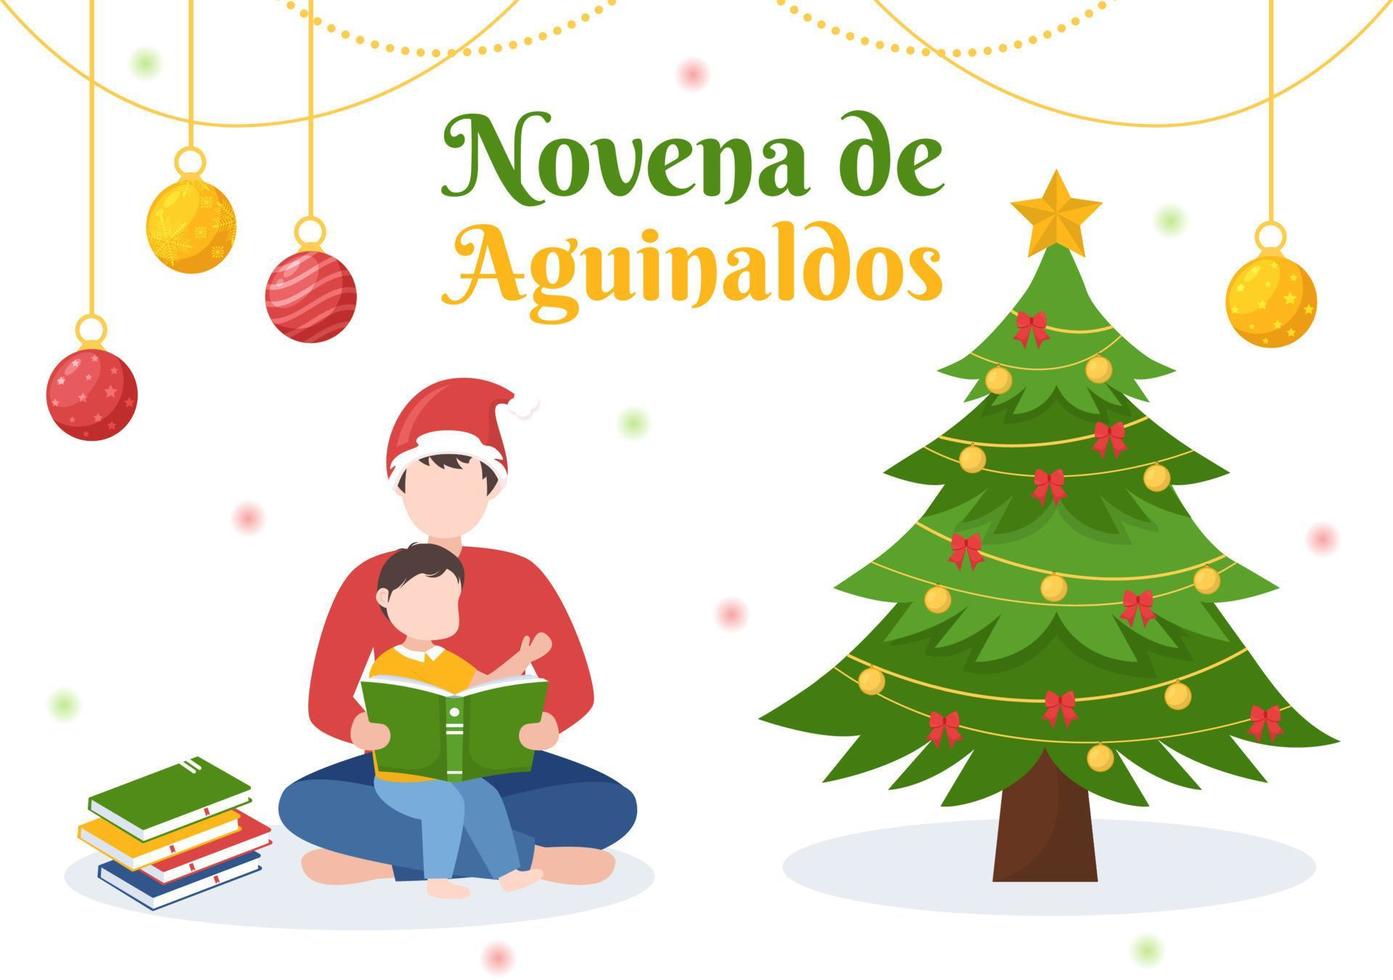 novena de aguinaldos feiertagstradition in kolumbien für familien, um zu weihnachten in flachen handgezeichneten vorlagenillustrationen der karikatur zusammenzukommen vektor